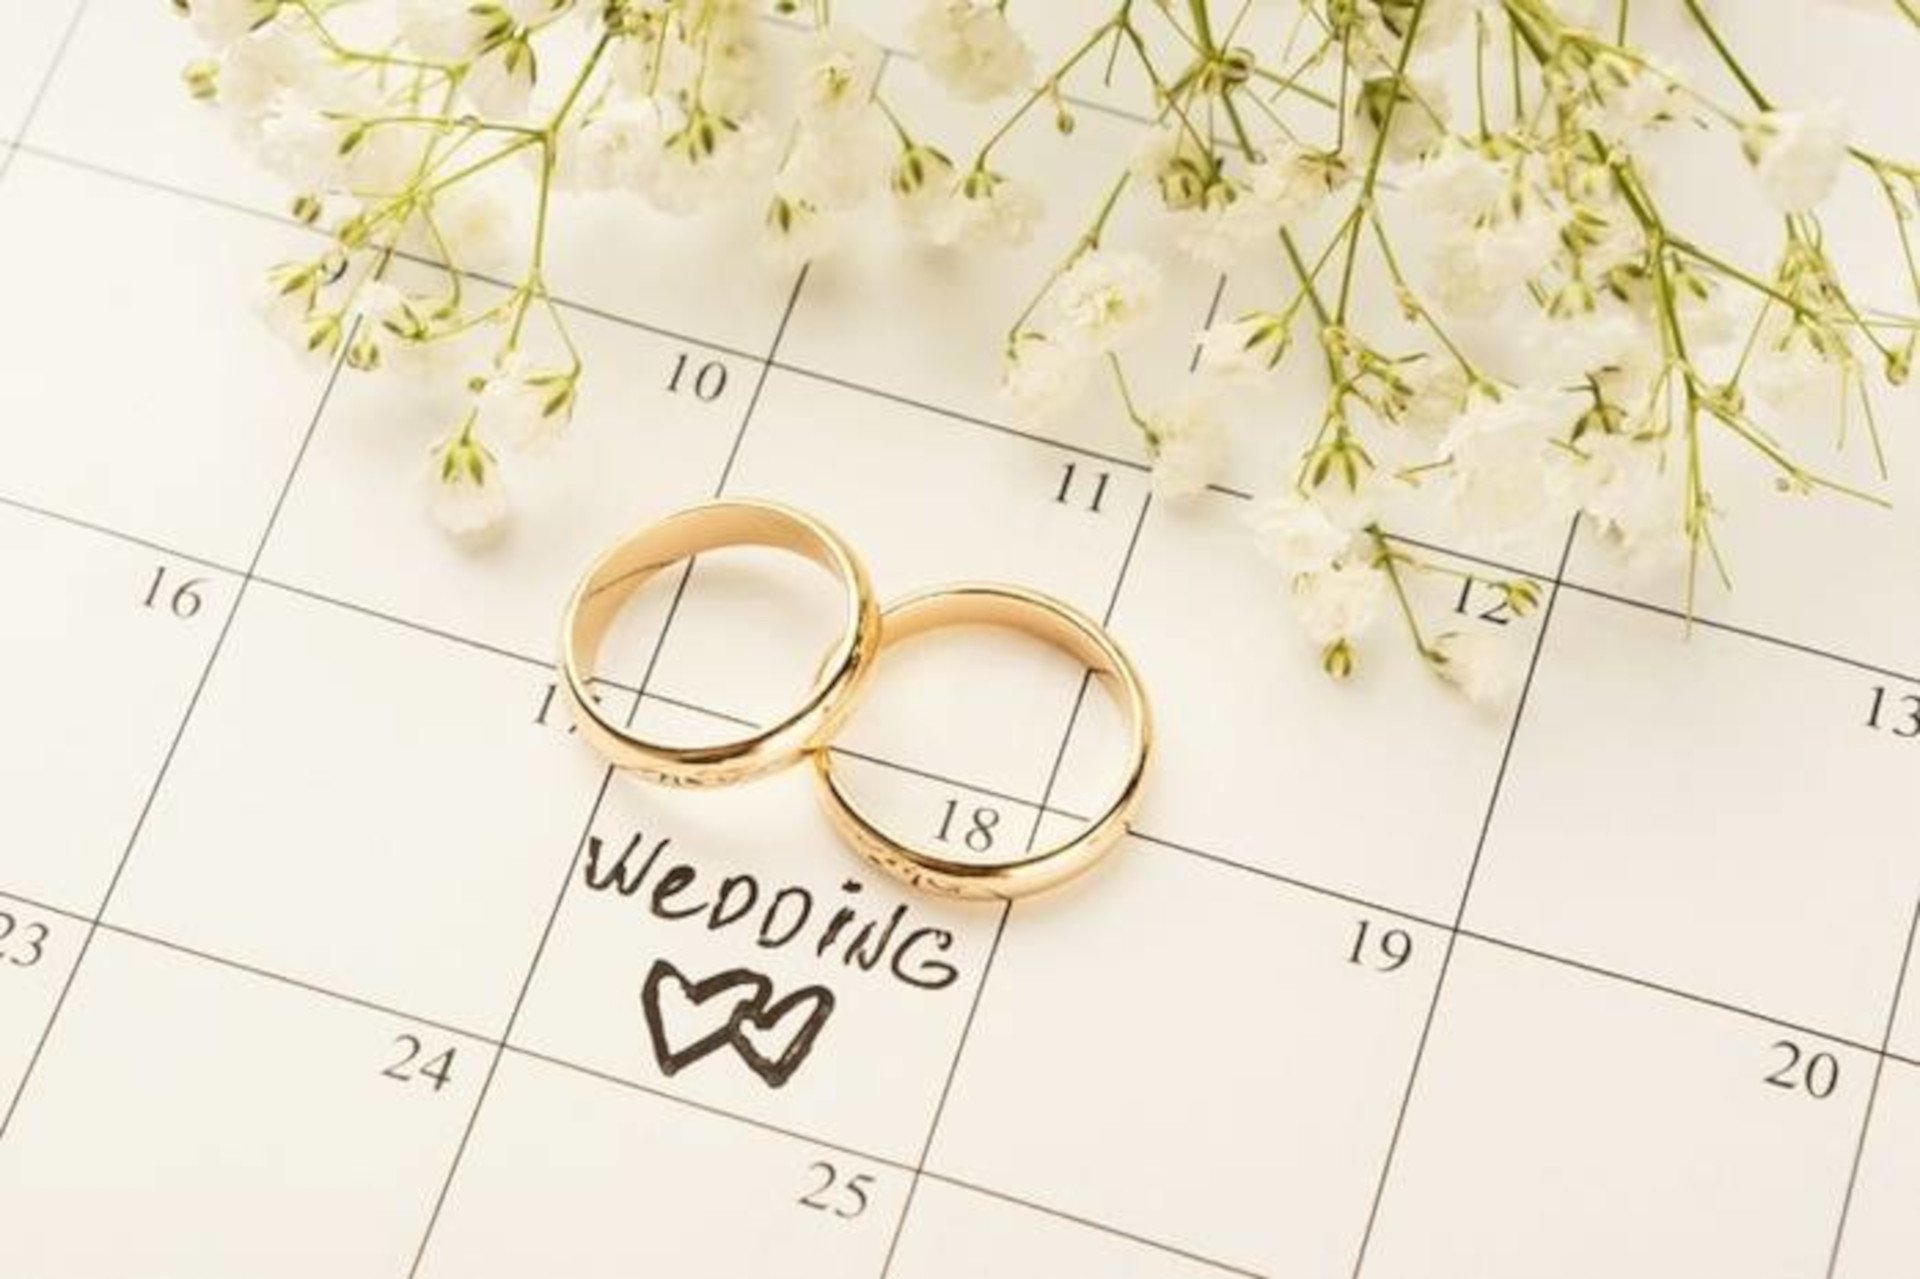 Брачные даты. Даты свадеб. Красивые даты для свадьбы. Сва дота. Календарь даты свадьбы.